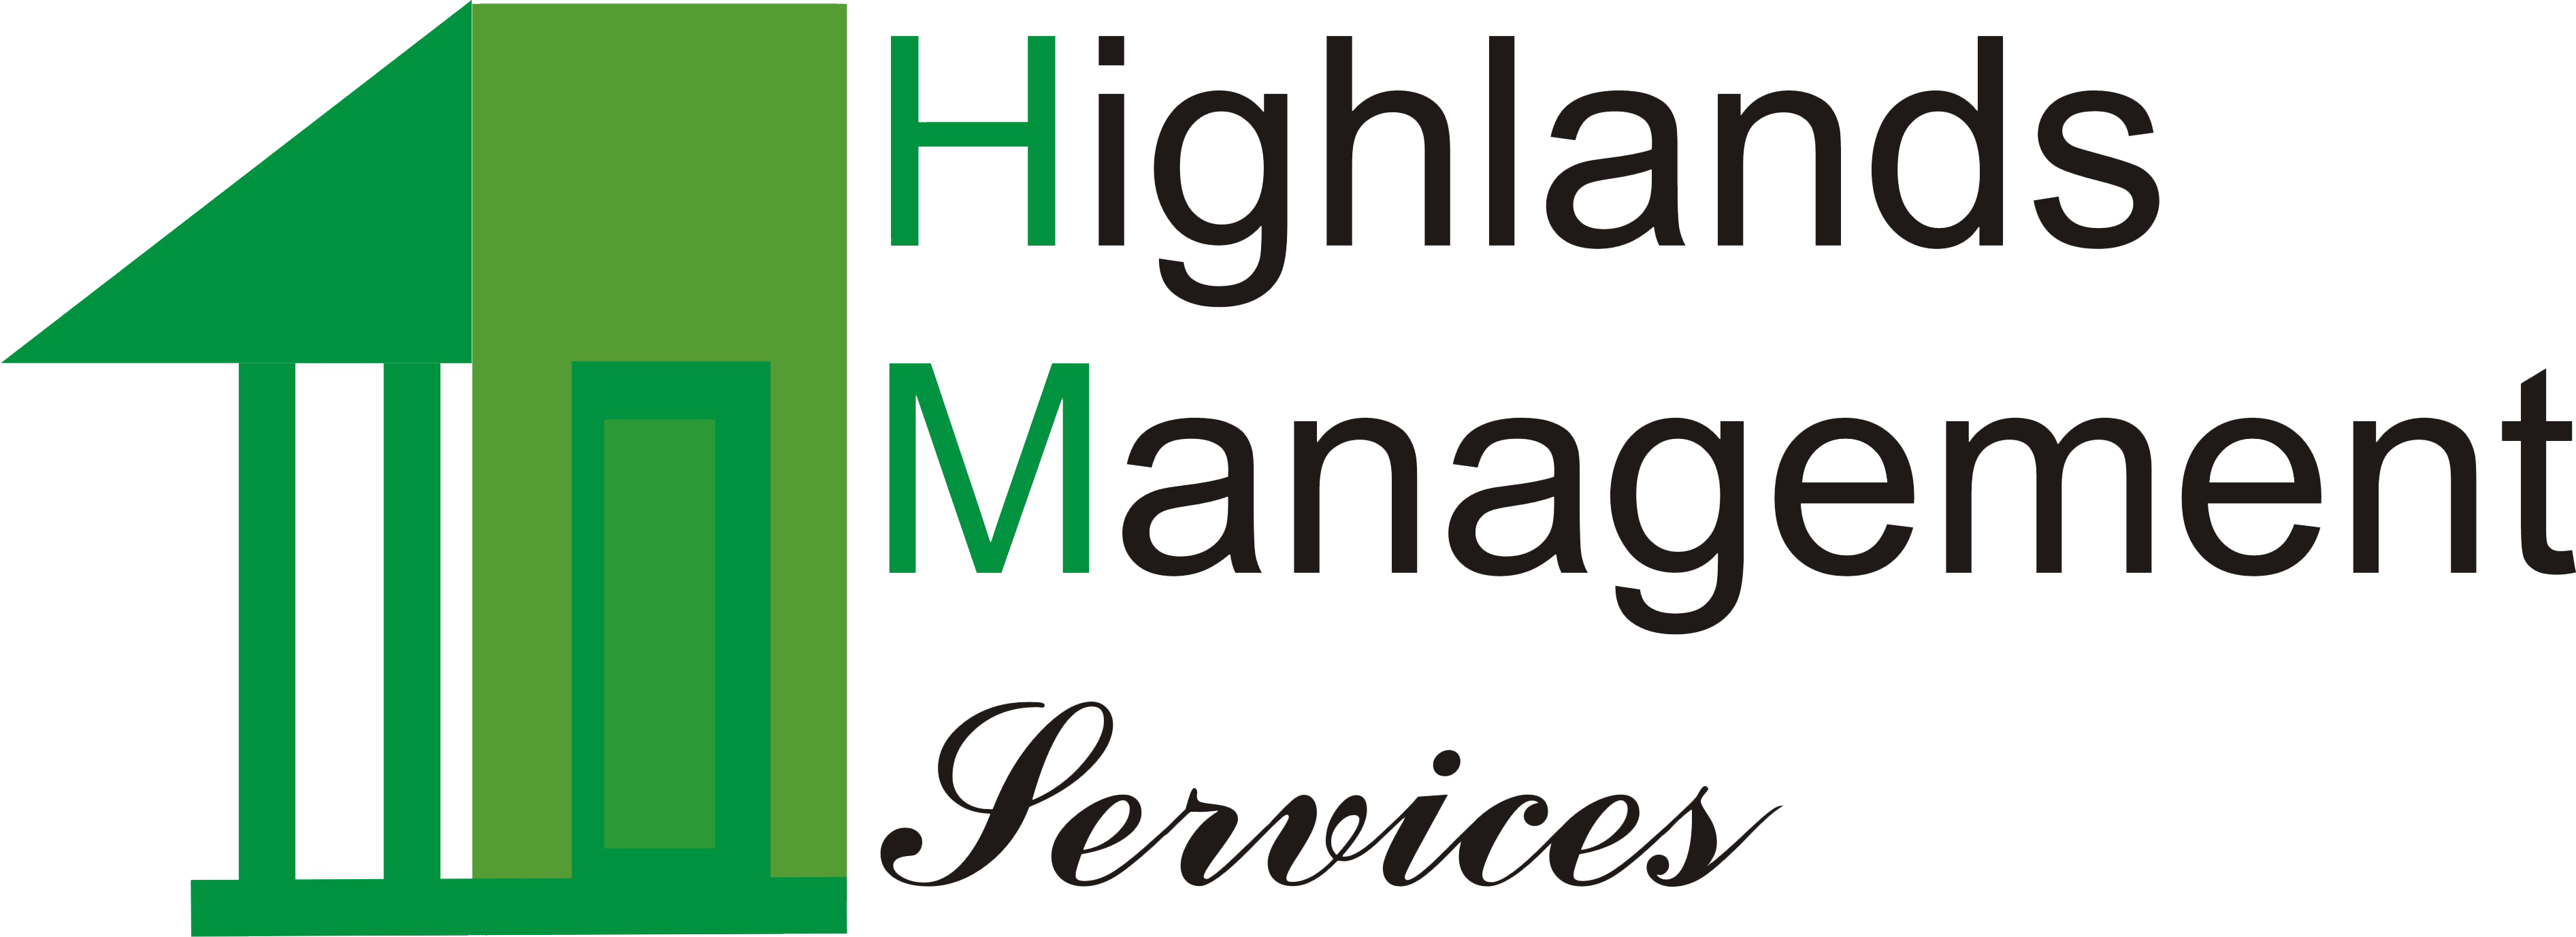 Highlands Management Services